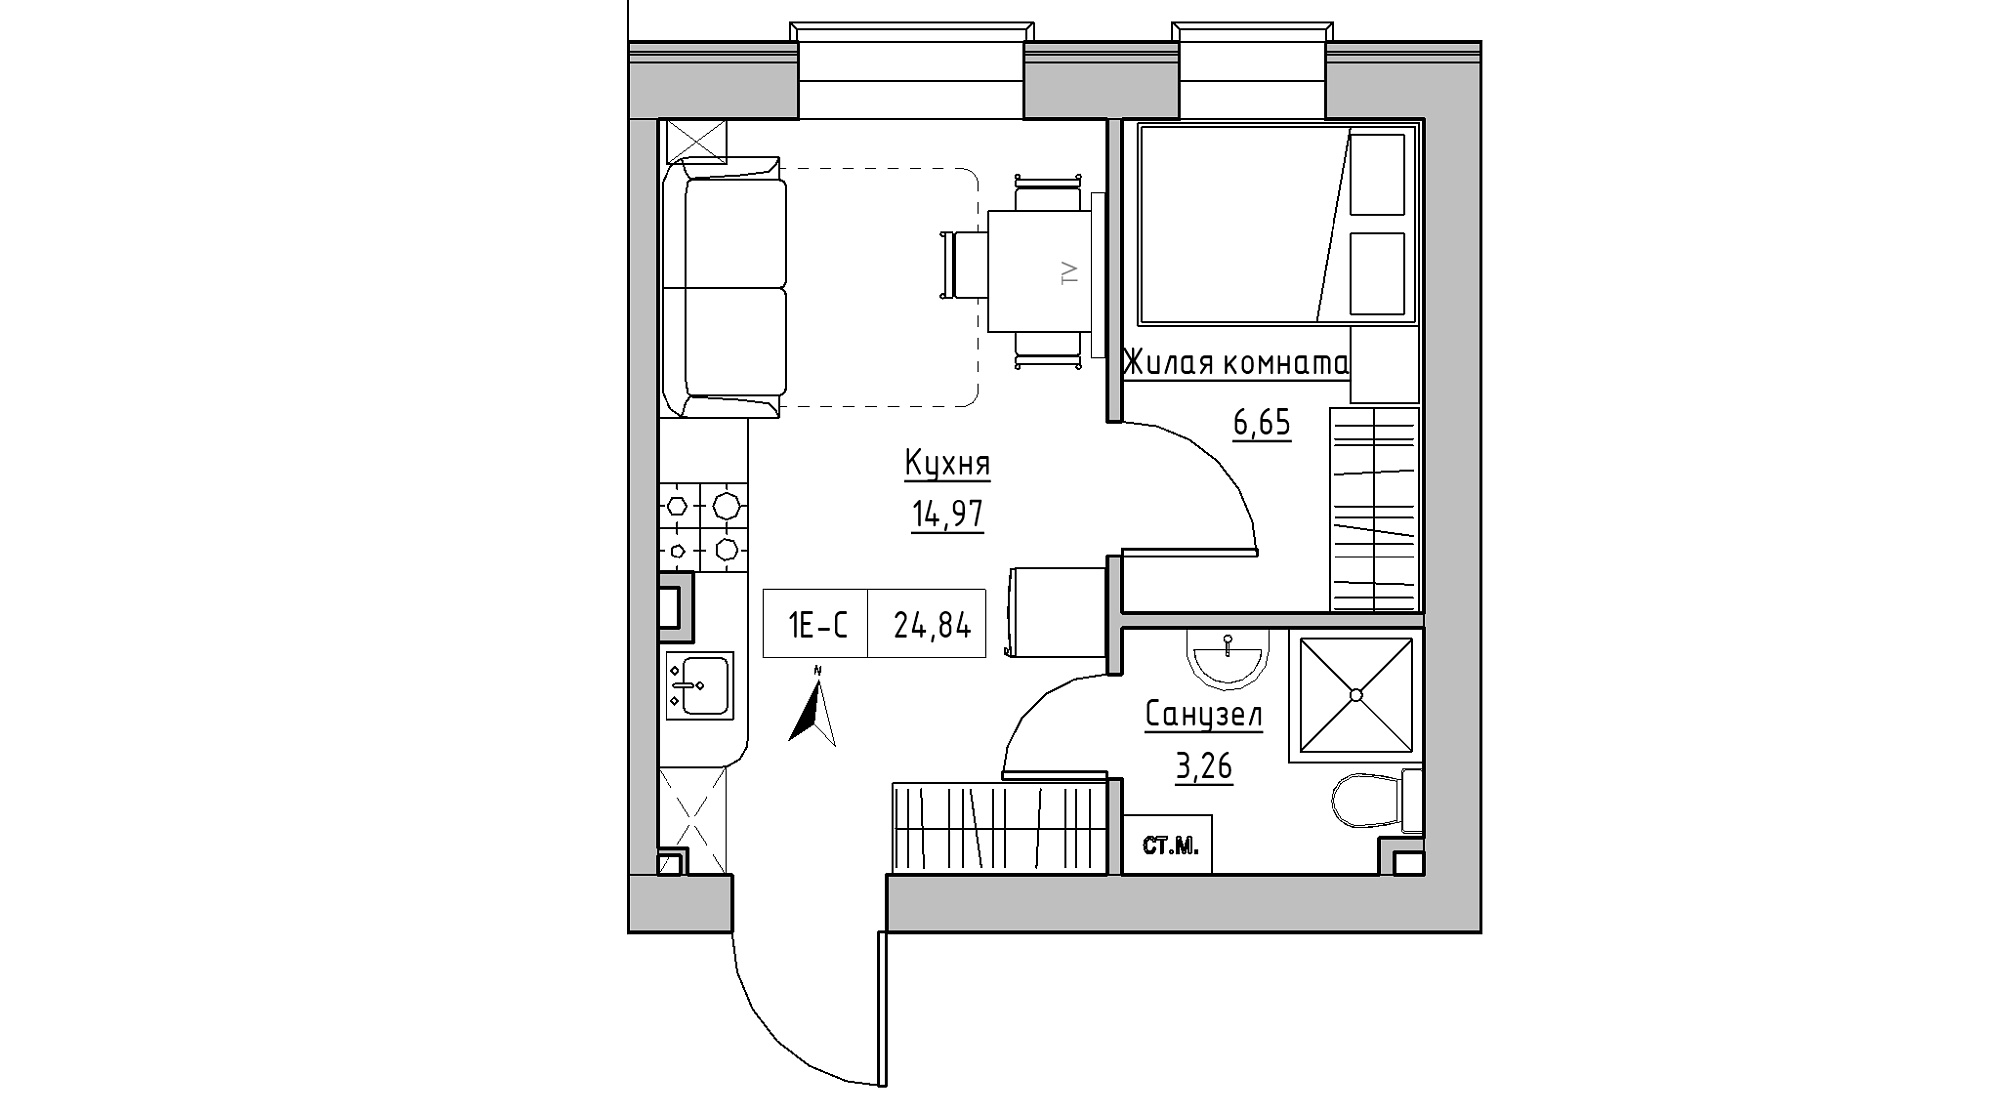 Планировка 1-к квартира площей 24.84м2, KS-013-01/0010.